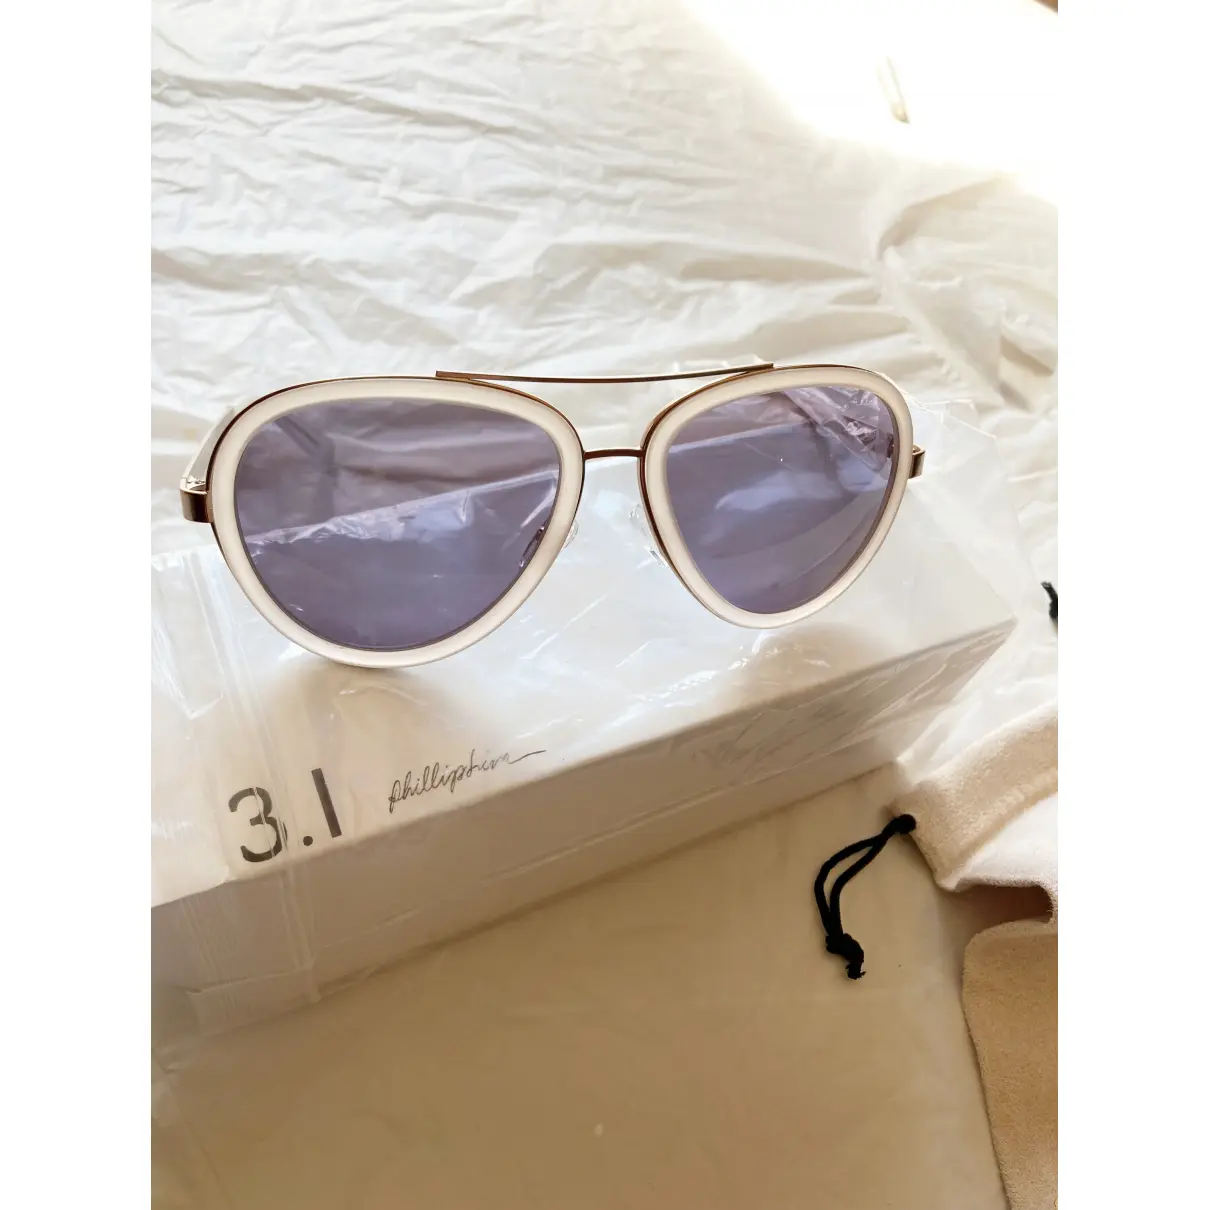 Sunglasses 3.1 Phillip Lim